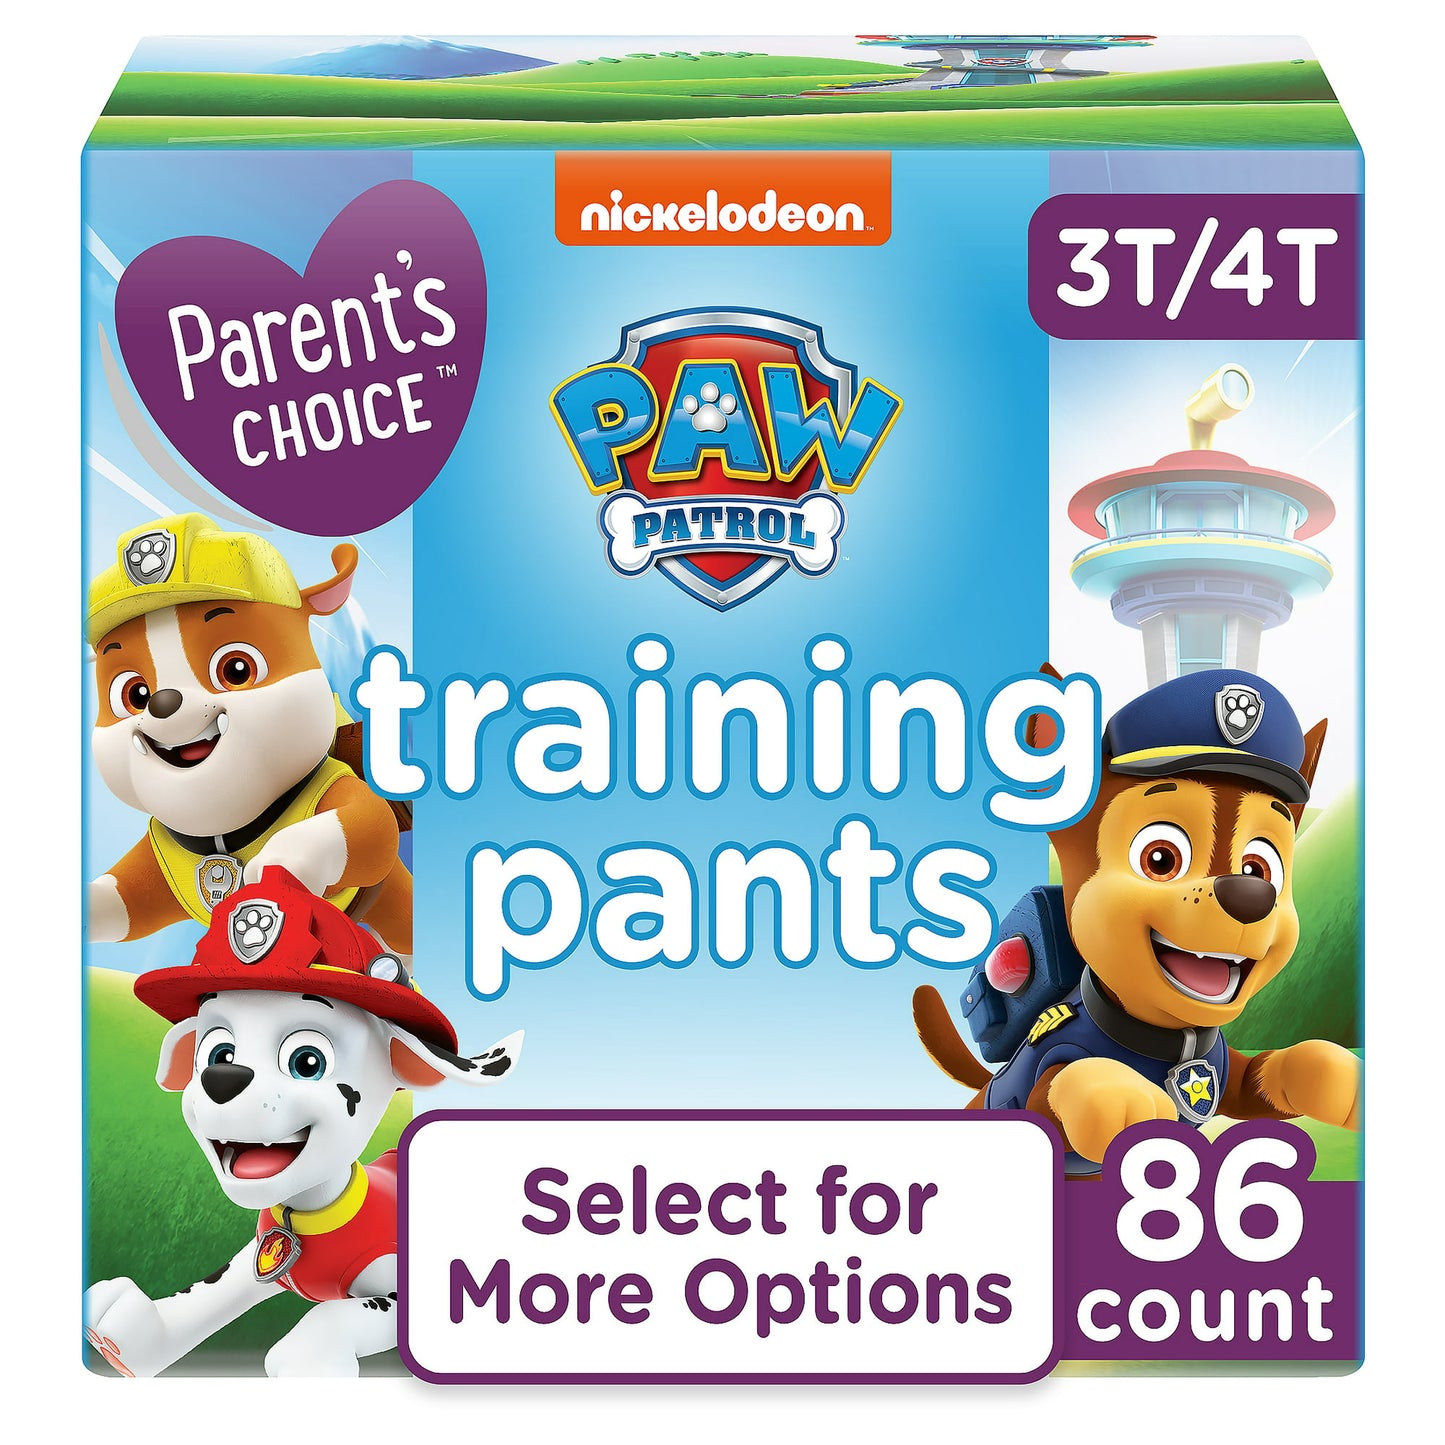 Parents Choice Boys Training Pants, 3T/4T, 86 Count